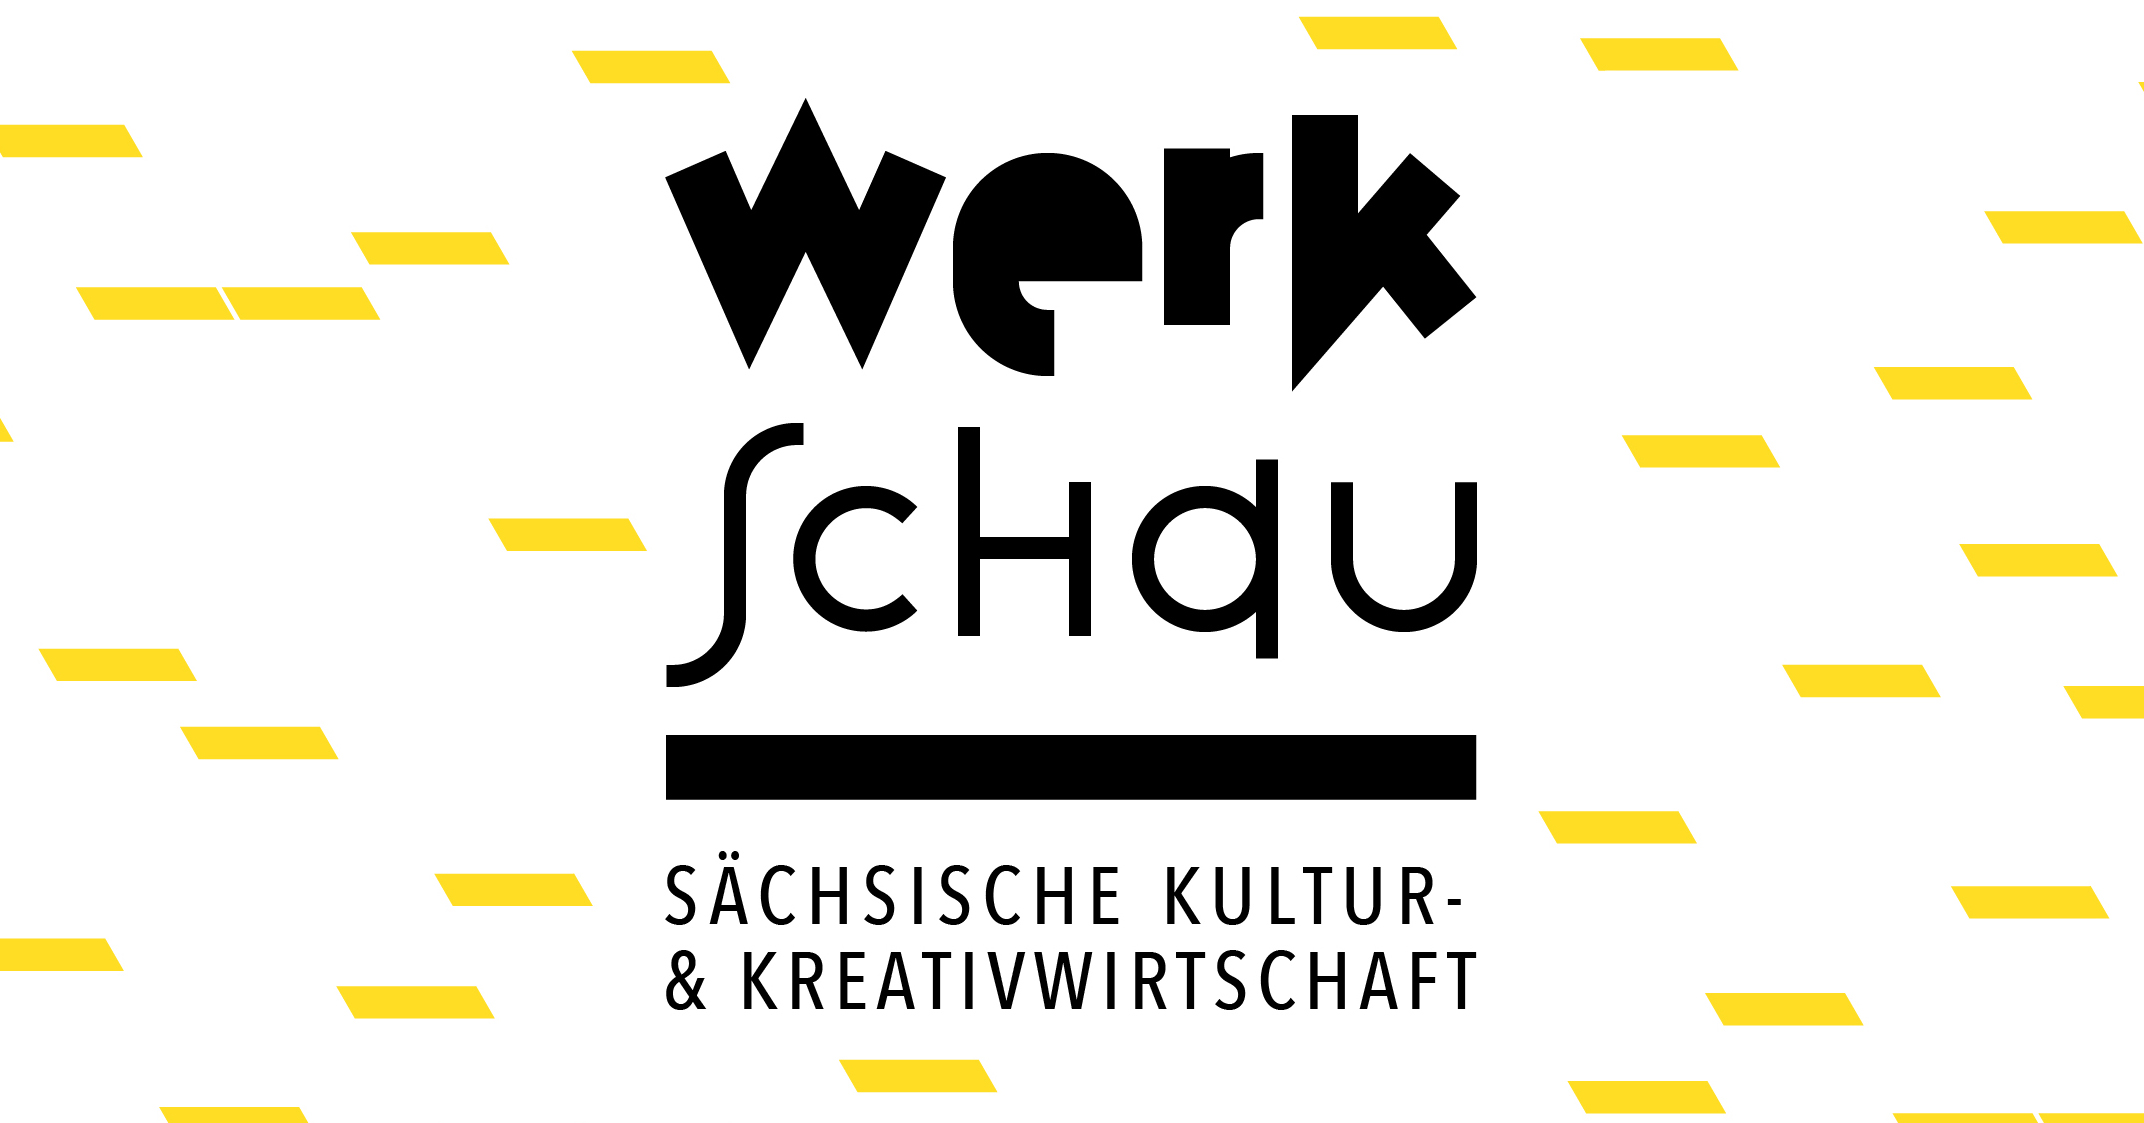 Sächsische Kultur- und Kreativwirtschaft